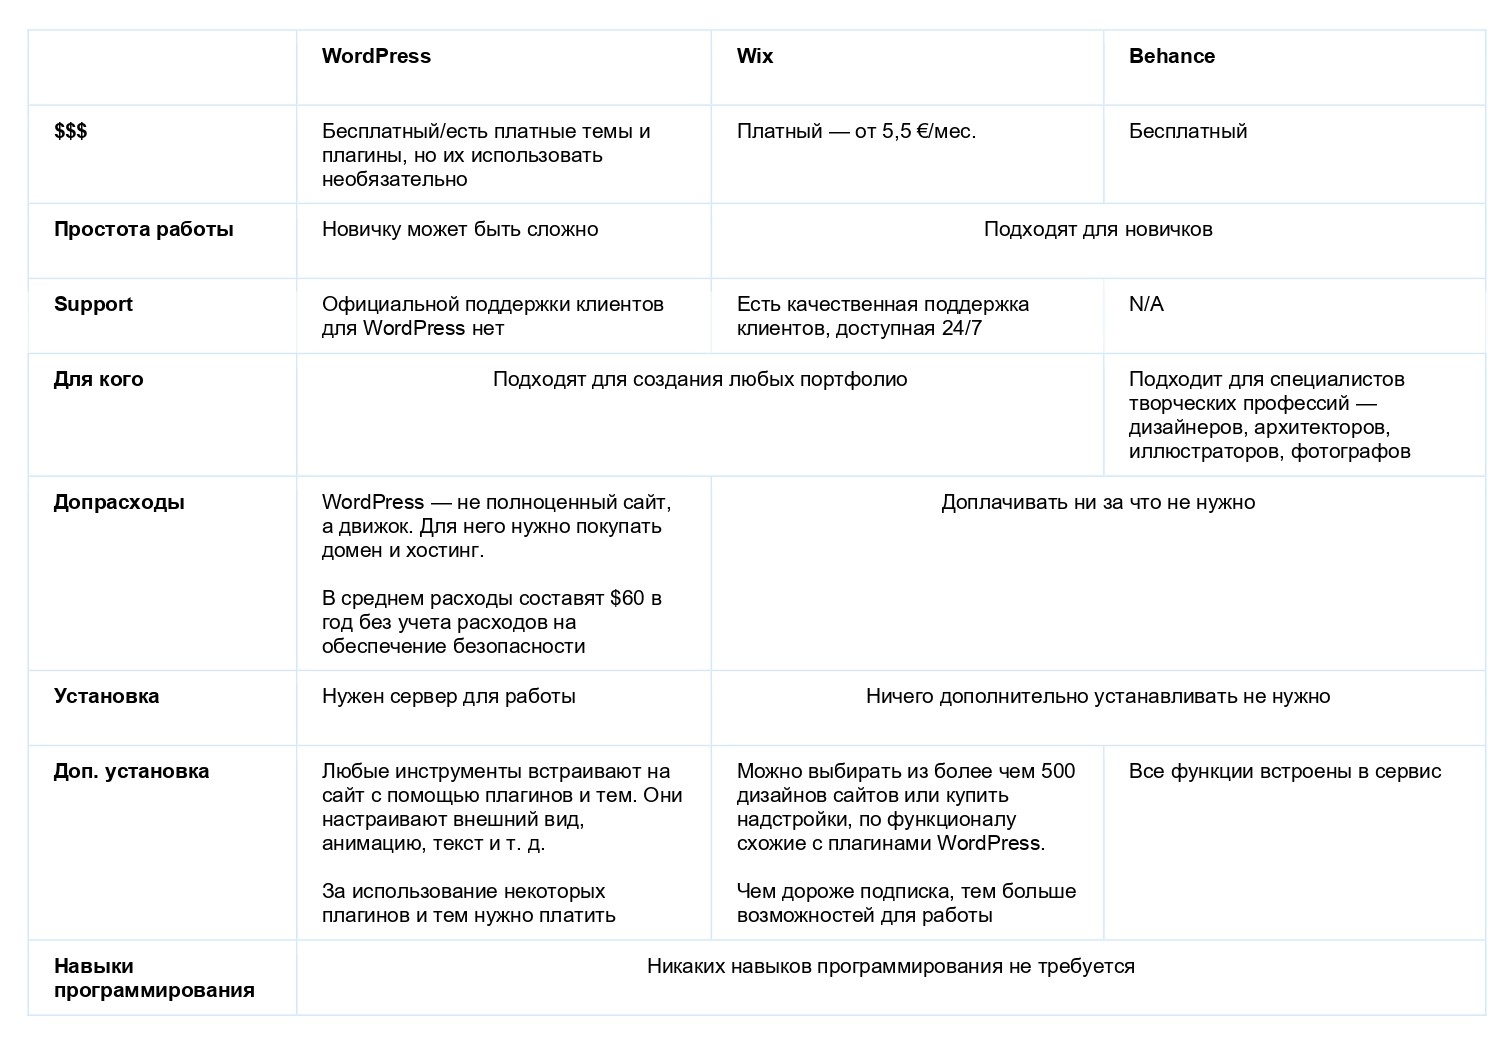 Таблица москва санкт петербург сравнение. Как создать сравнительную таблицу. Создание сравнительной таблицы. Сравнение искусственного и естественного отбора таблица. Сравнение почтовых сервисов таблица.